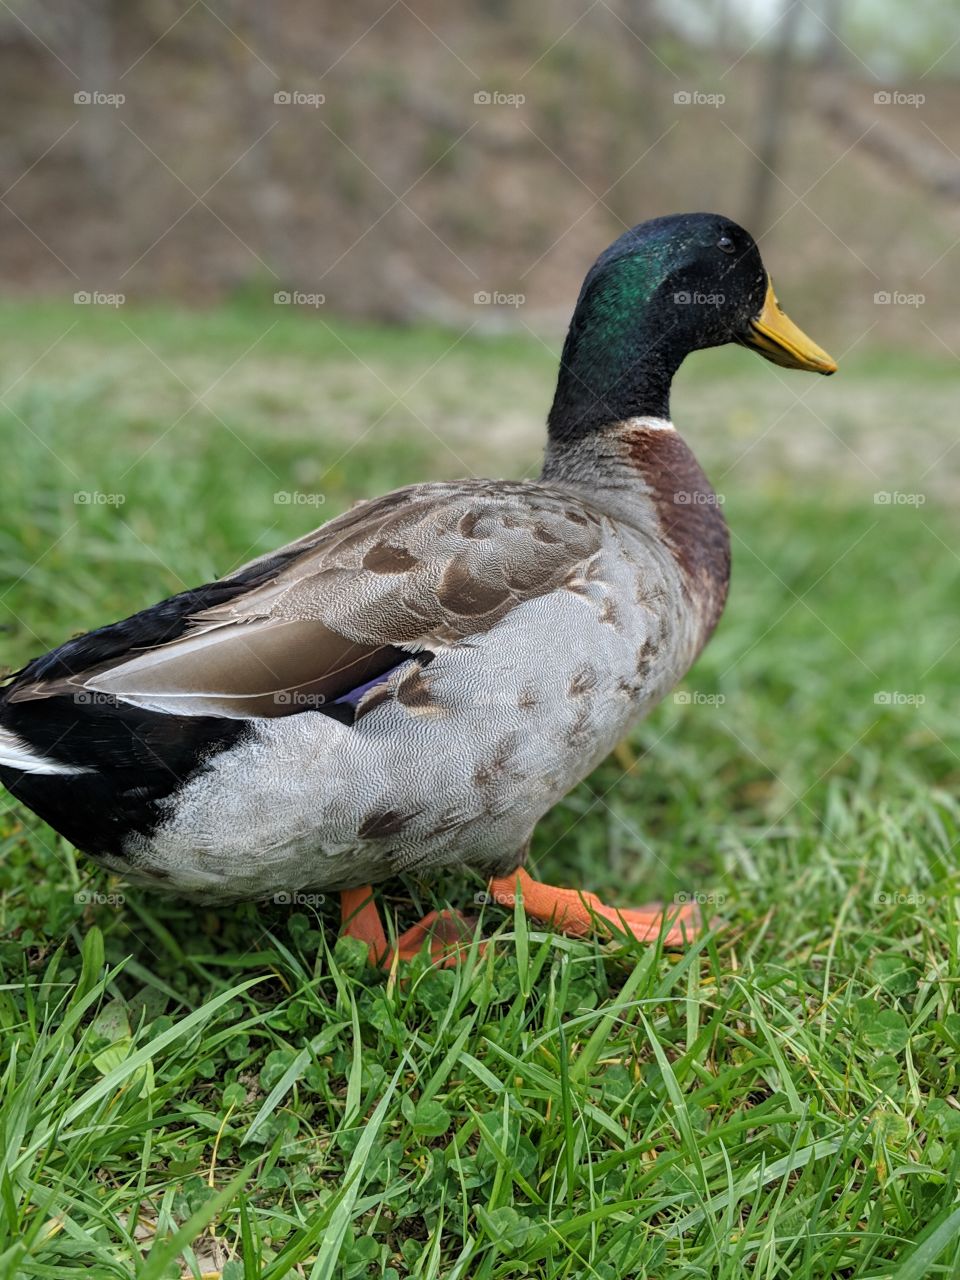 duck friend 2